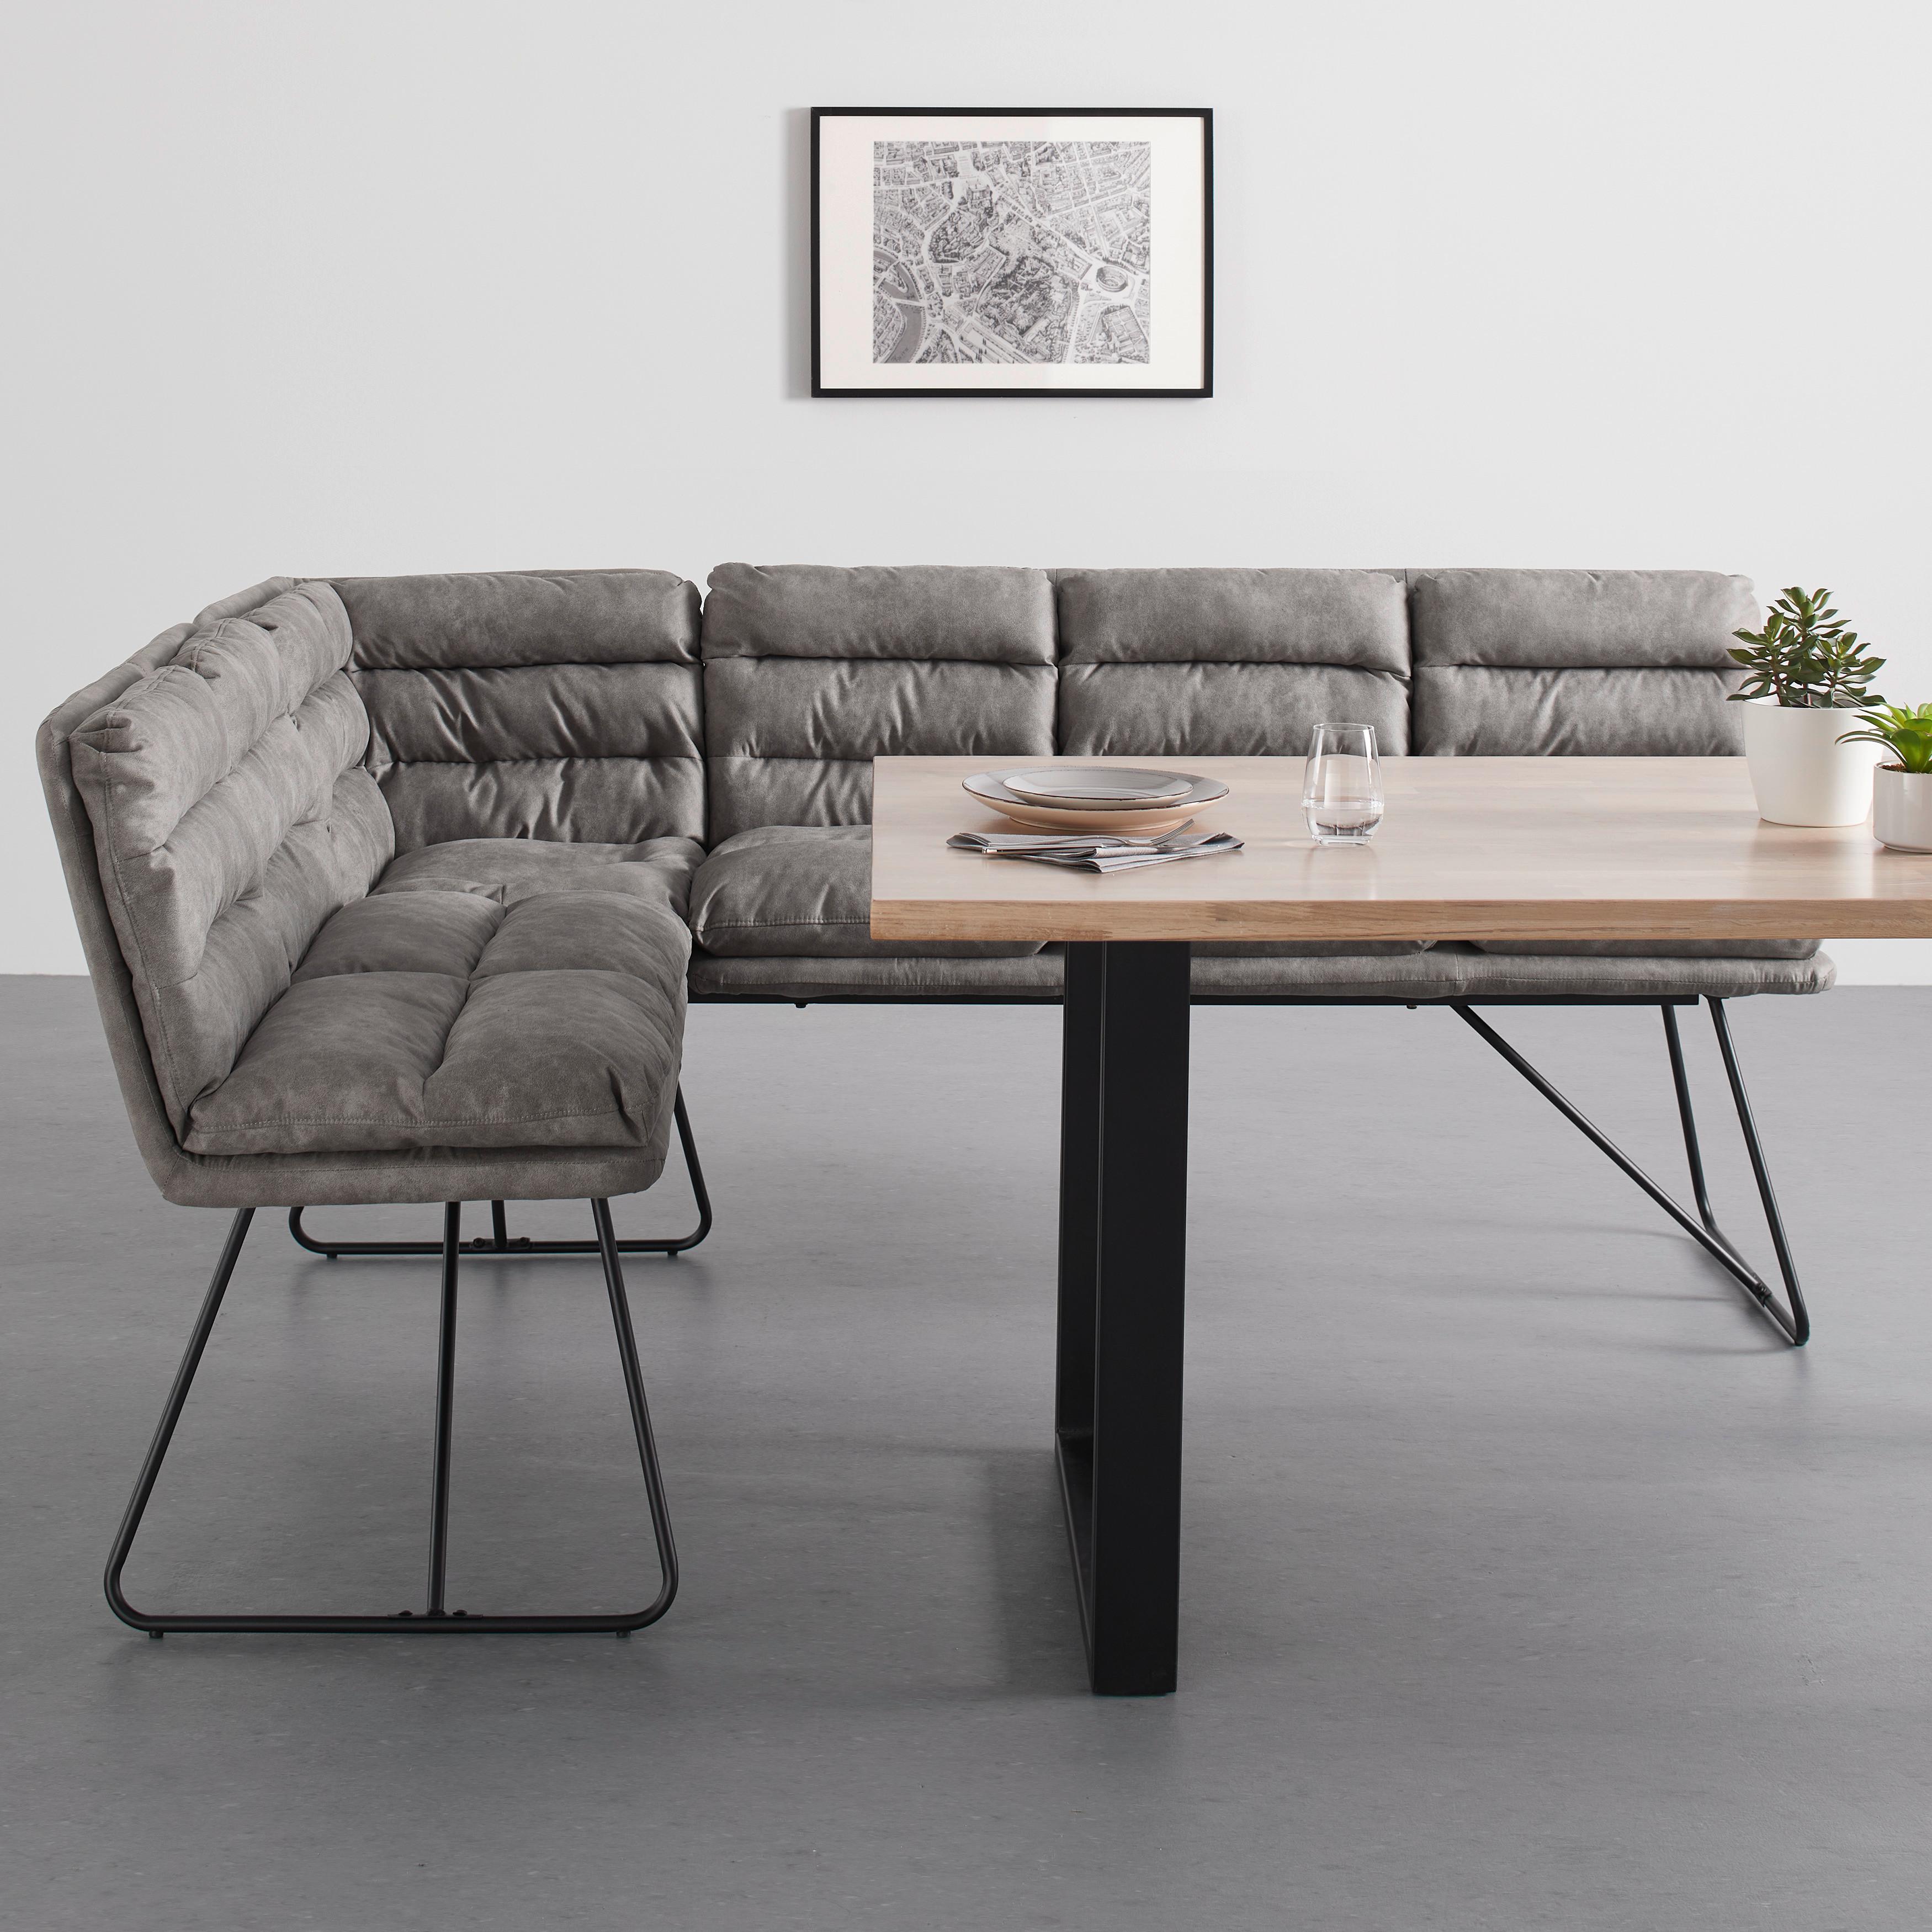 Sitzbank "Kona", grau, Gepolstert - Schwarz/Grau, MODERN, Textil/Metall (154/89/201cm) - Bessagi Home